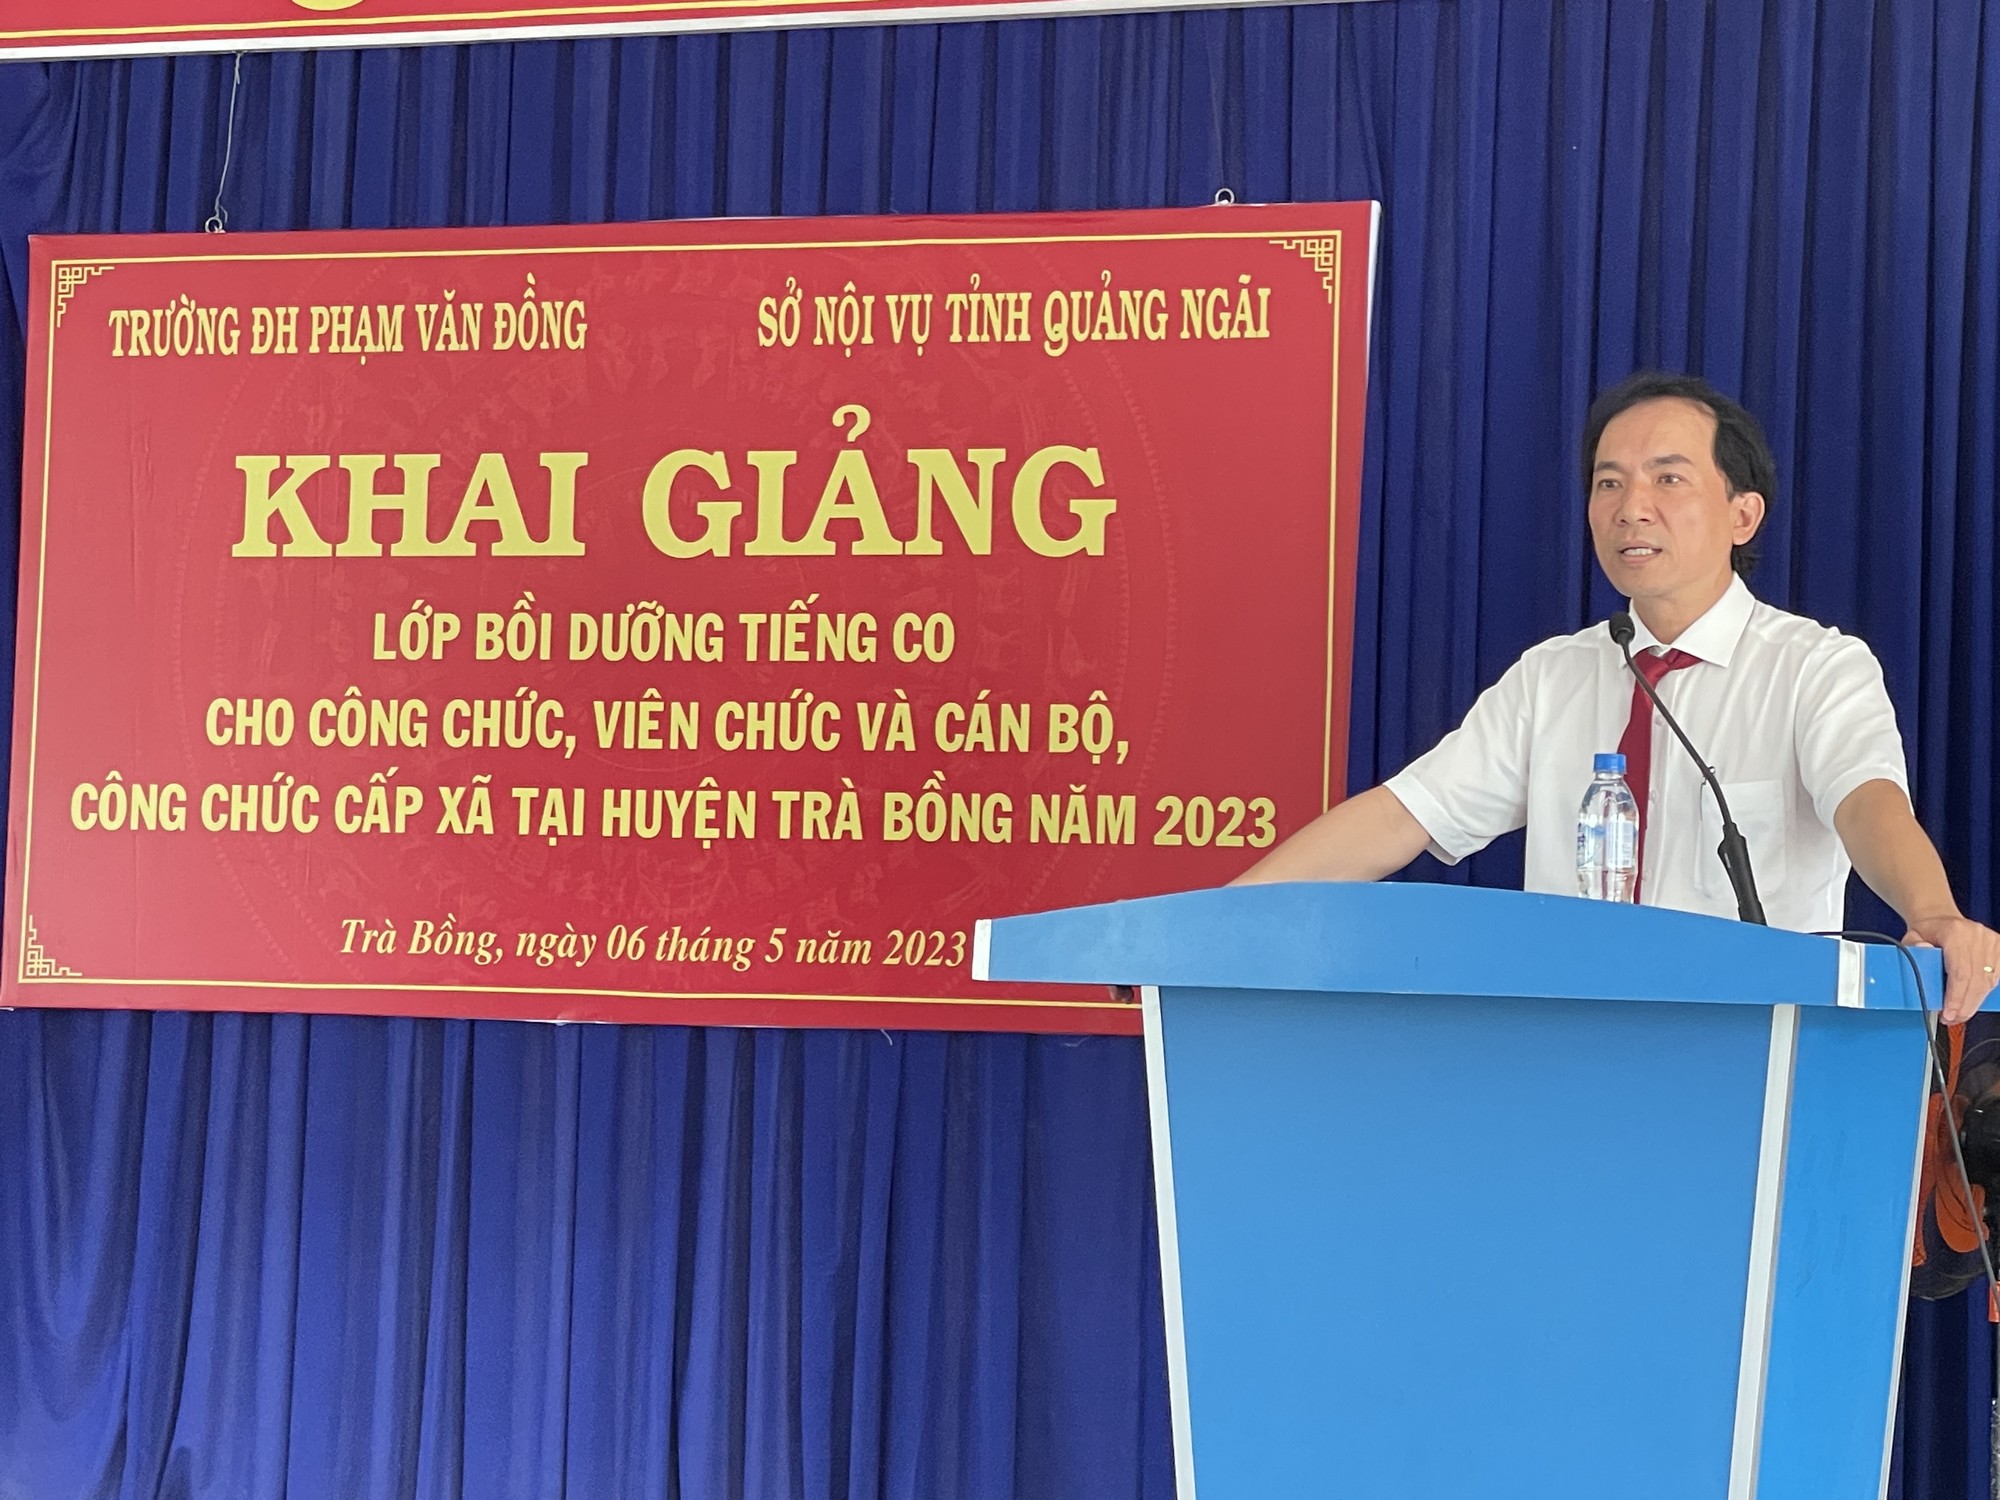 Khai giảng lớp bồi dưỡng tiếng Co cho cán bộ công chức, viên chức và cán bộ công chức cấp xã tại huyện Trà Bồng năm 2023.